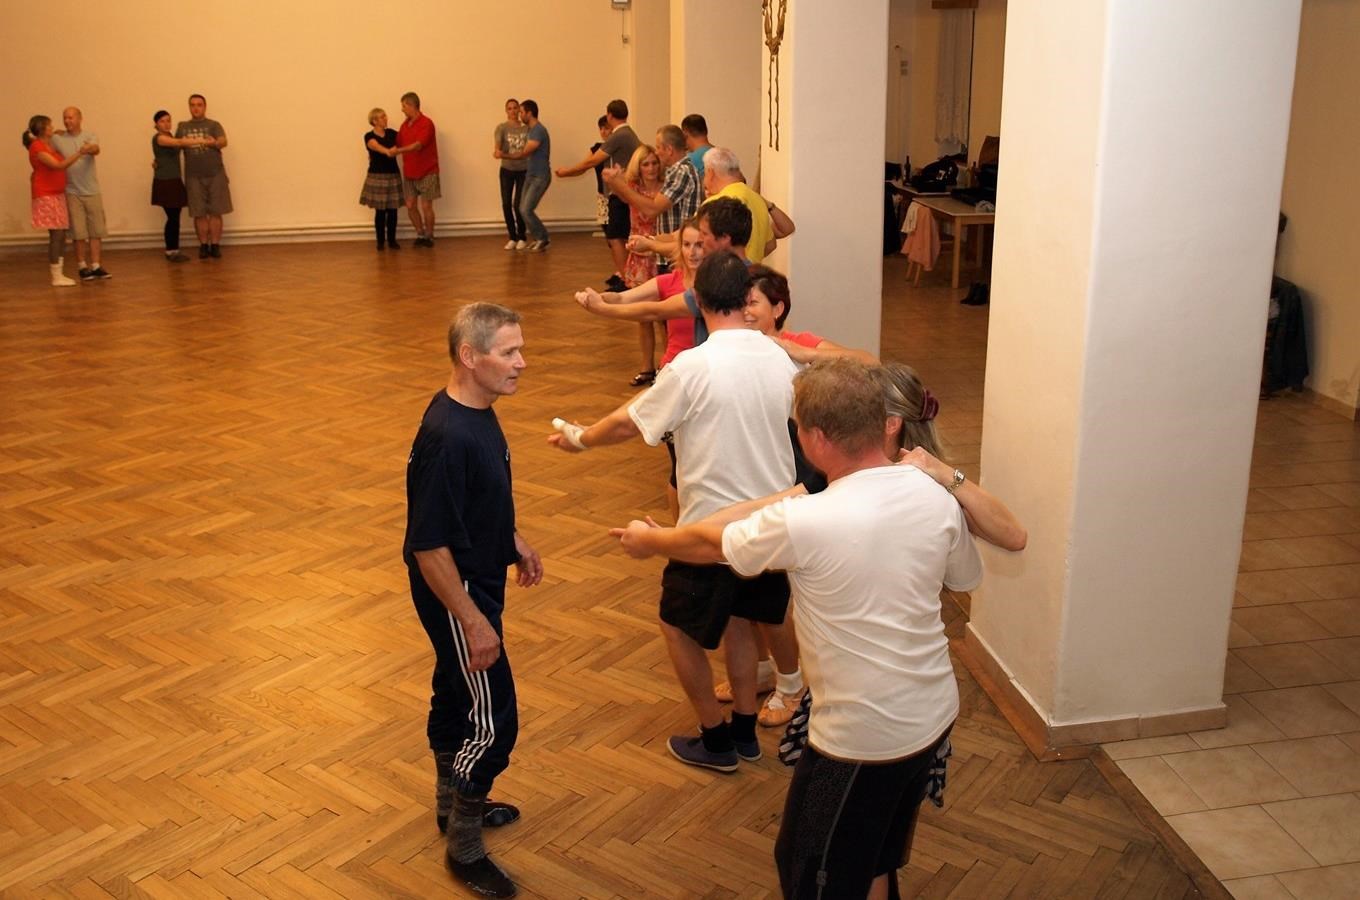 Škola verbuňku a lidových tanců – Kurzy lidových tanců